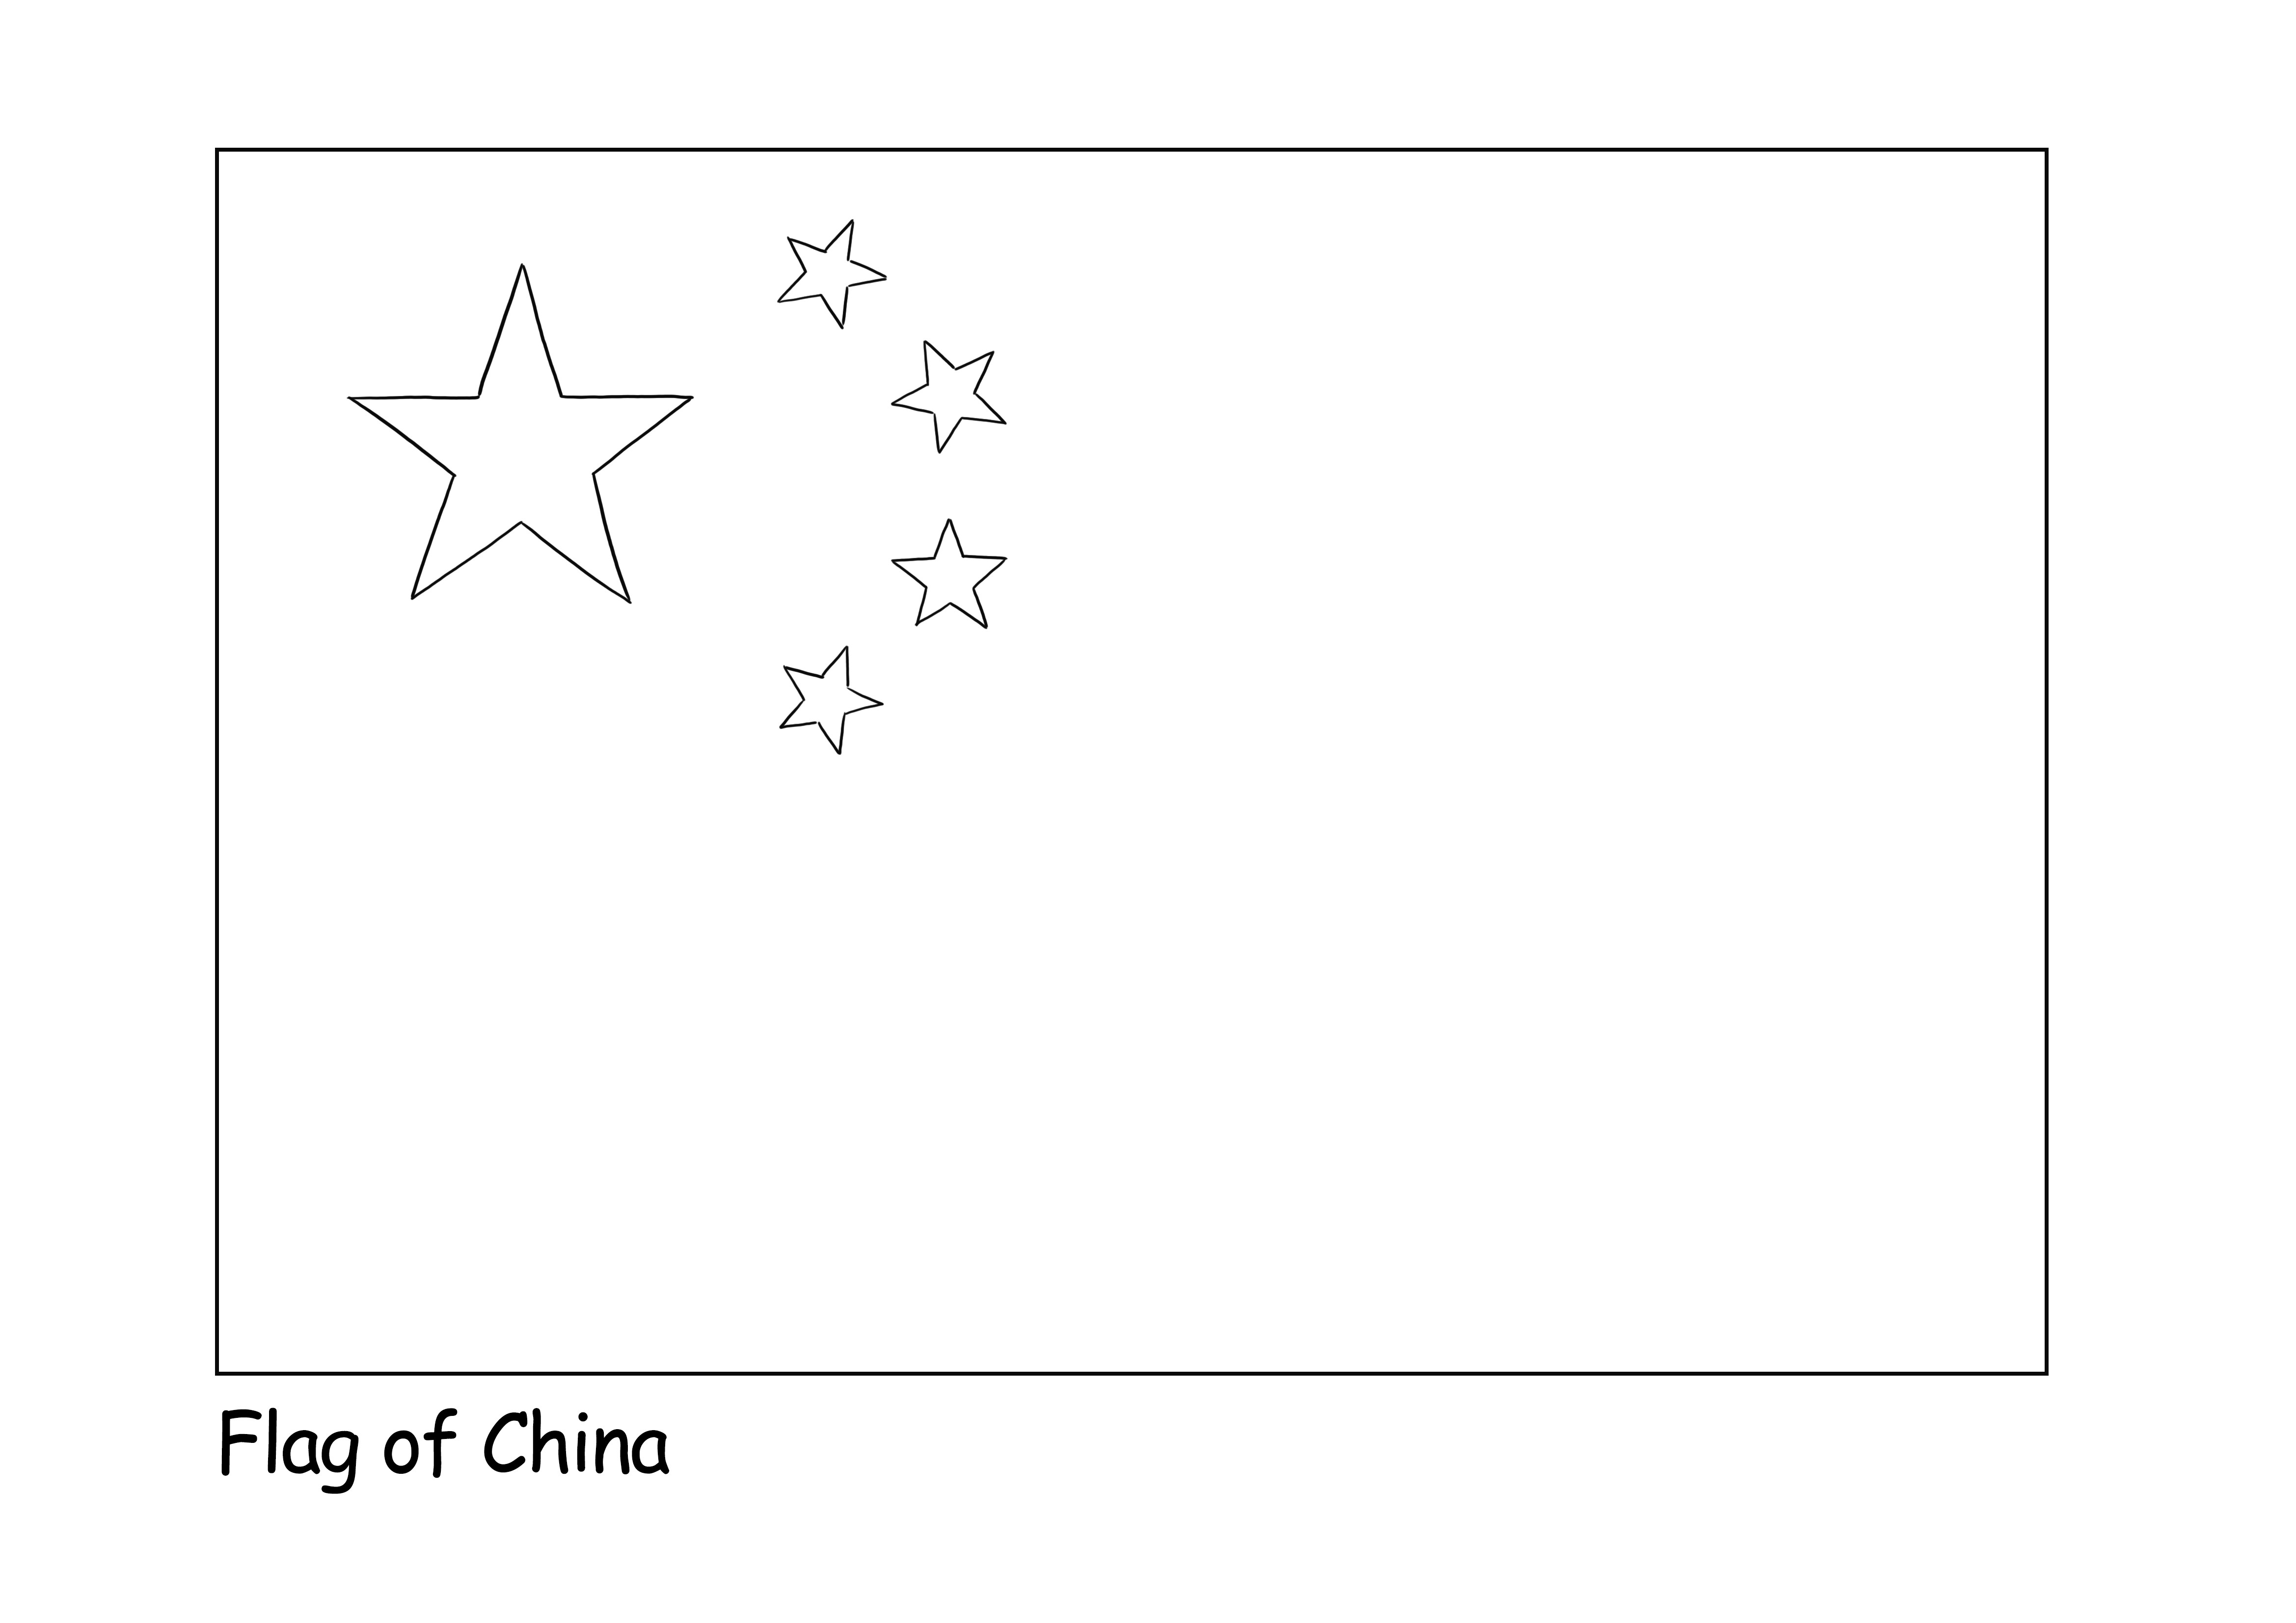 Çocukların farklı ülke bayrakları hakkında bilgi edinmesi için ücretsiz Çin Bayrağı boyama sayfası